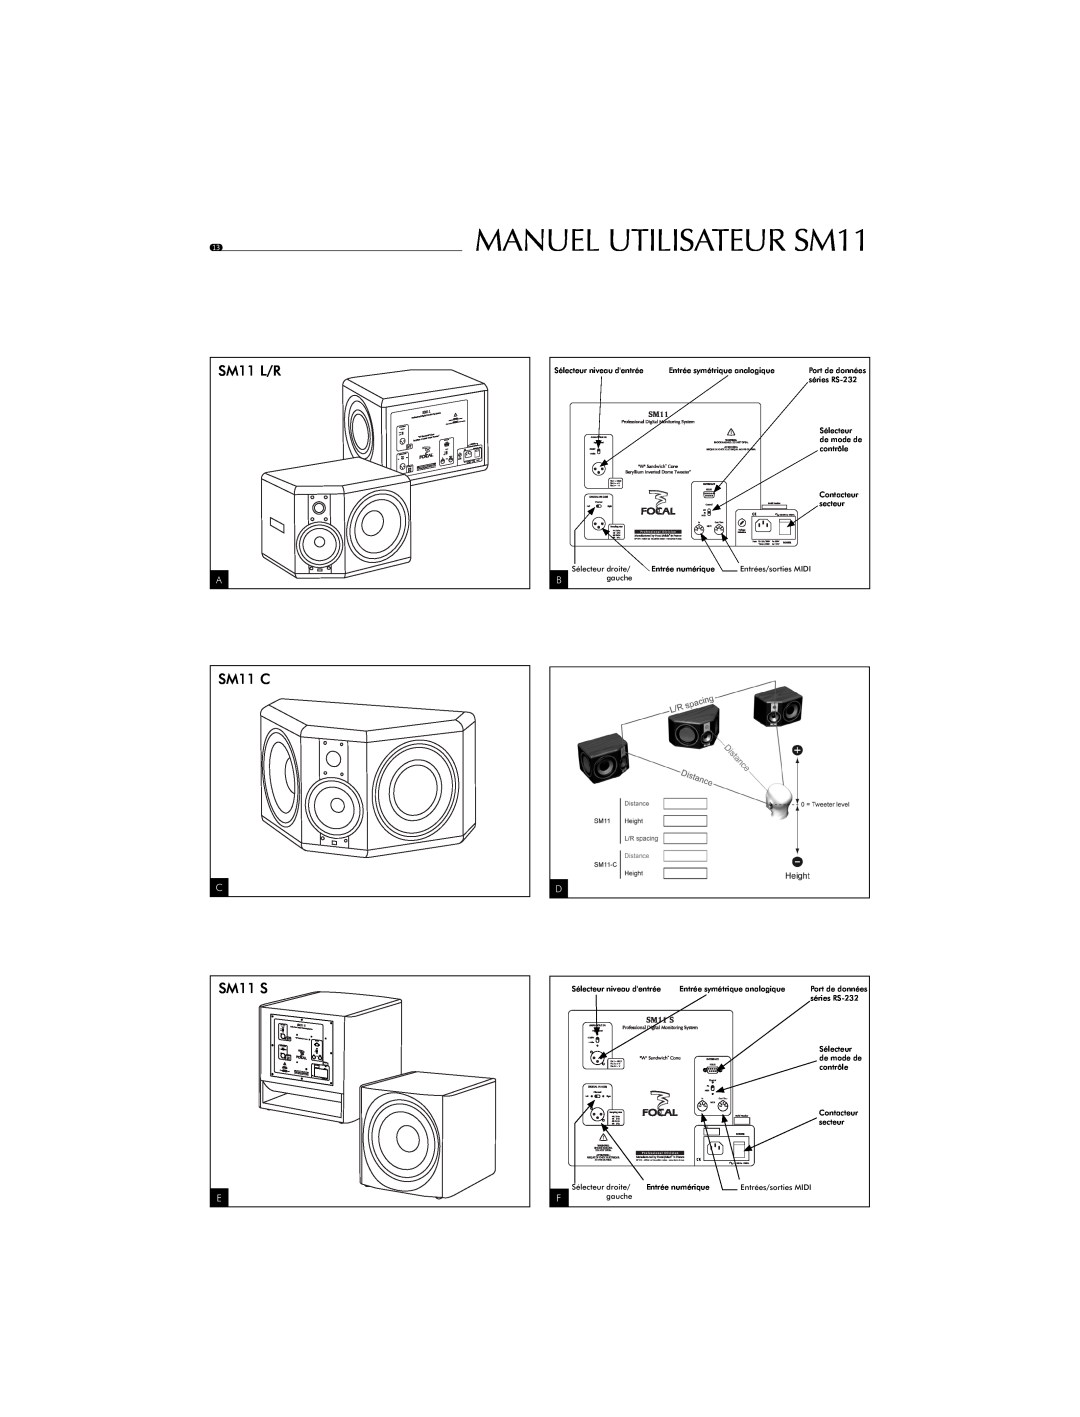 Focal user manual MANUEL UTILISATEUR SM11, SM11 L/R, SM11 C, SM11 S, Sélecteur niveau dentrée 